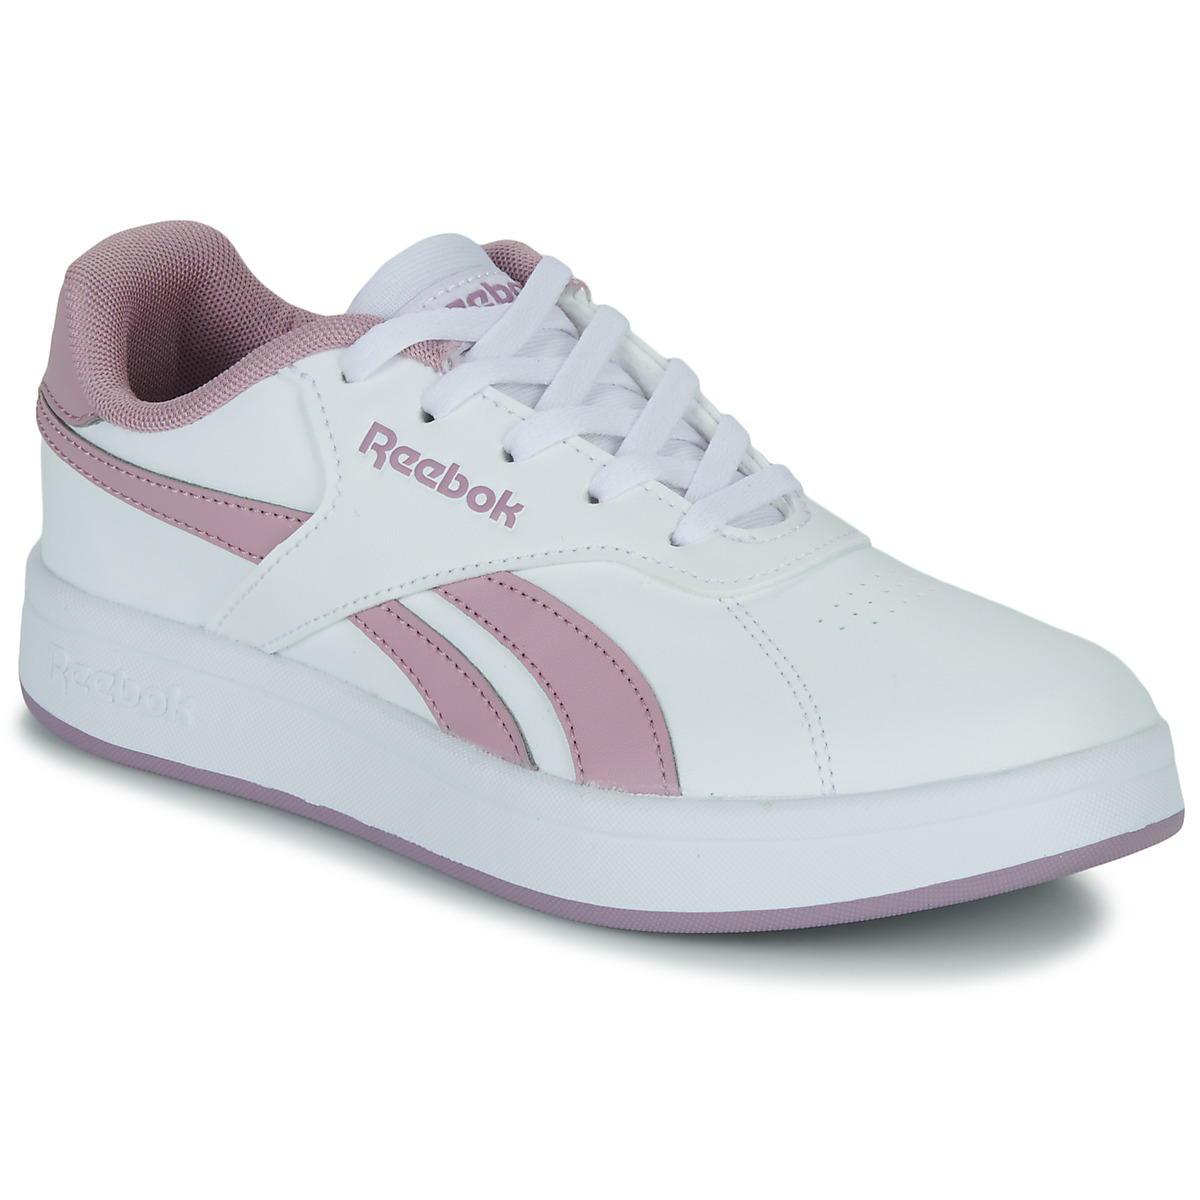 Zapatillas deportivas niñas Reebok en color blanco. Talla 22 Color BLANCO